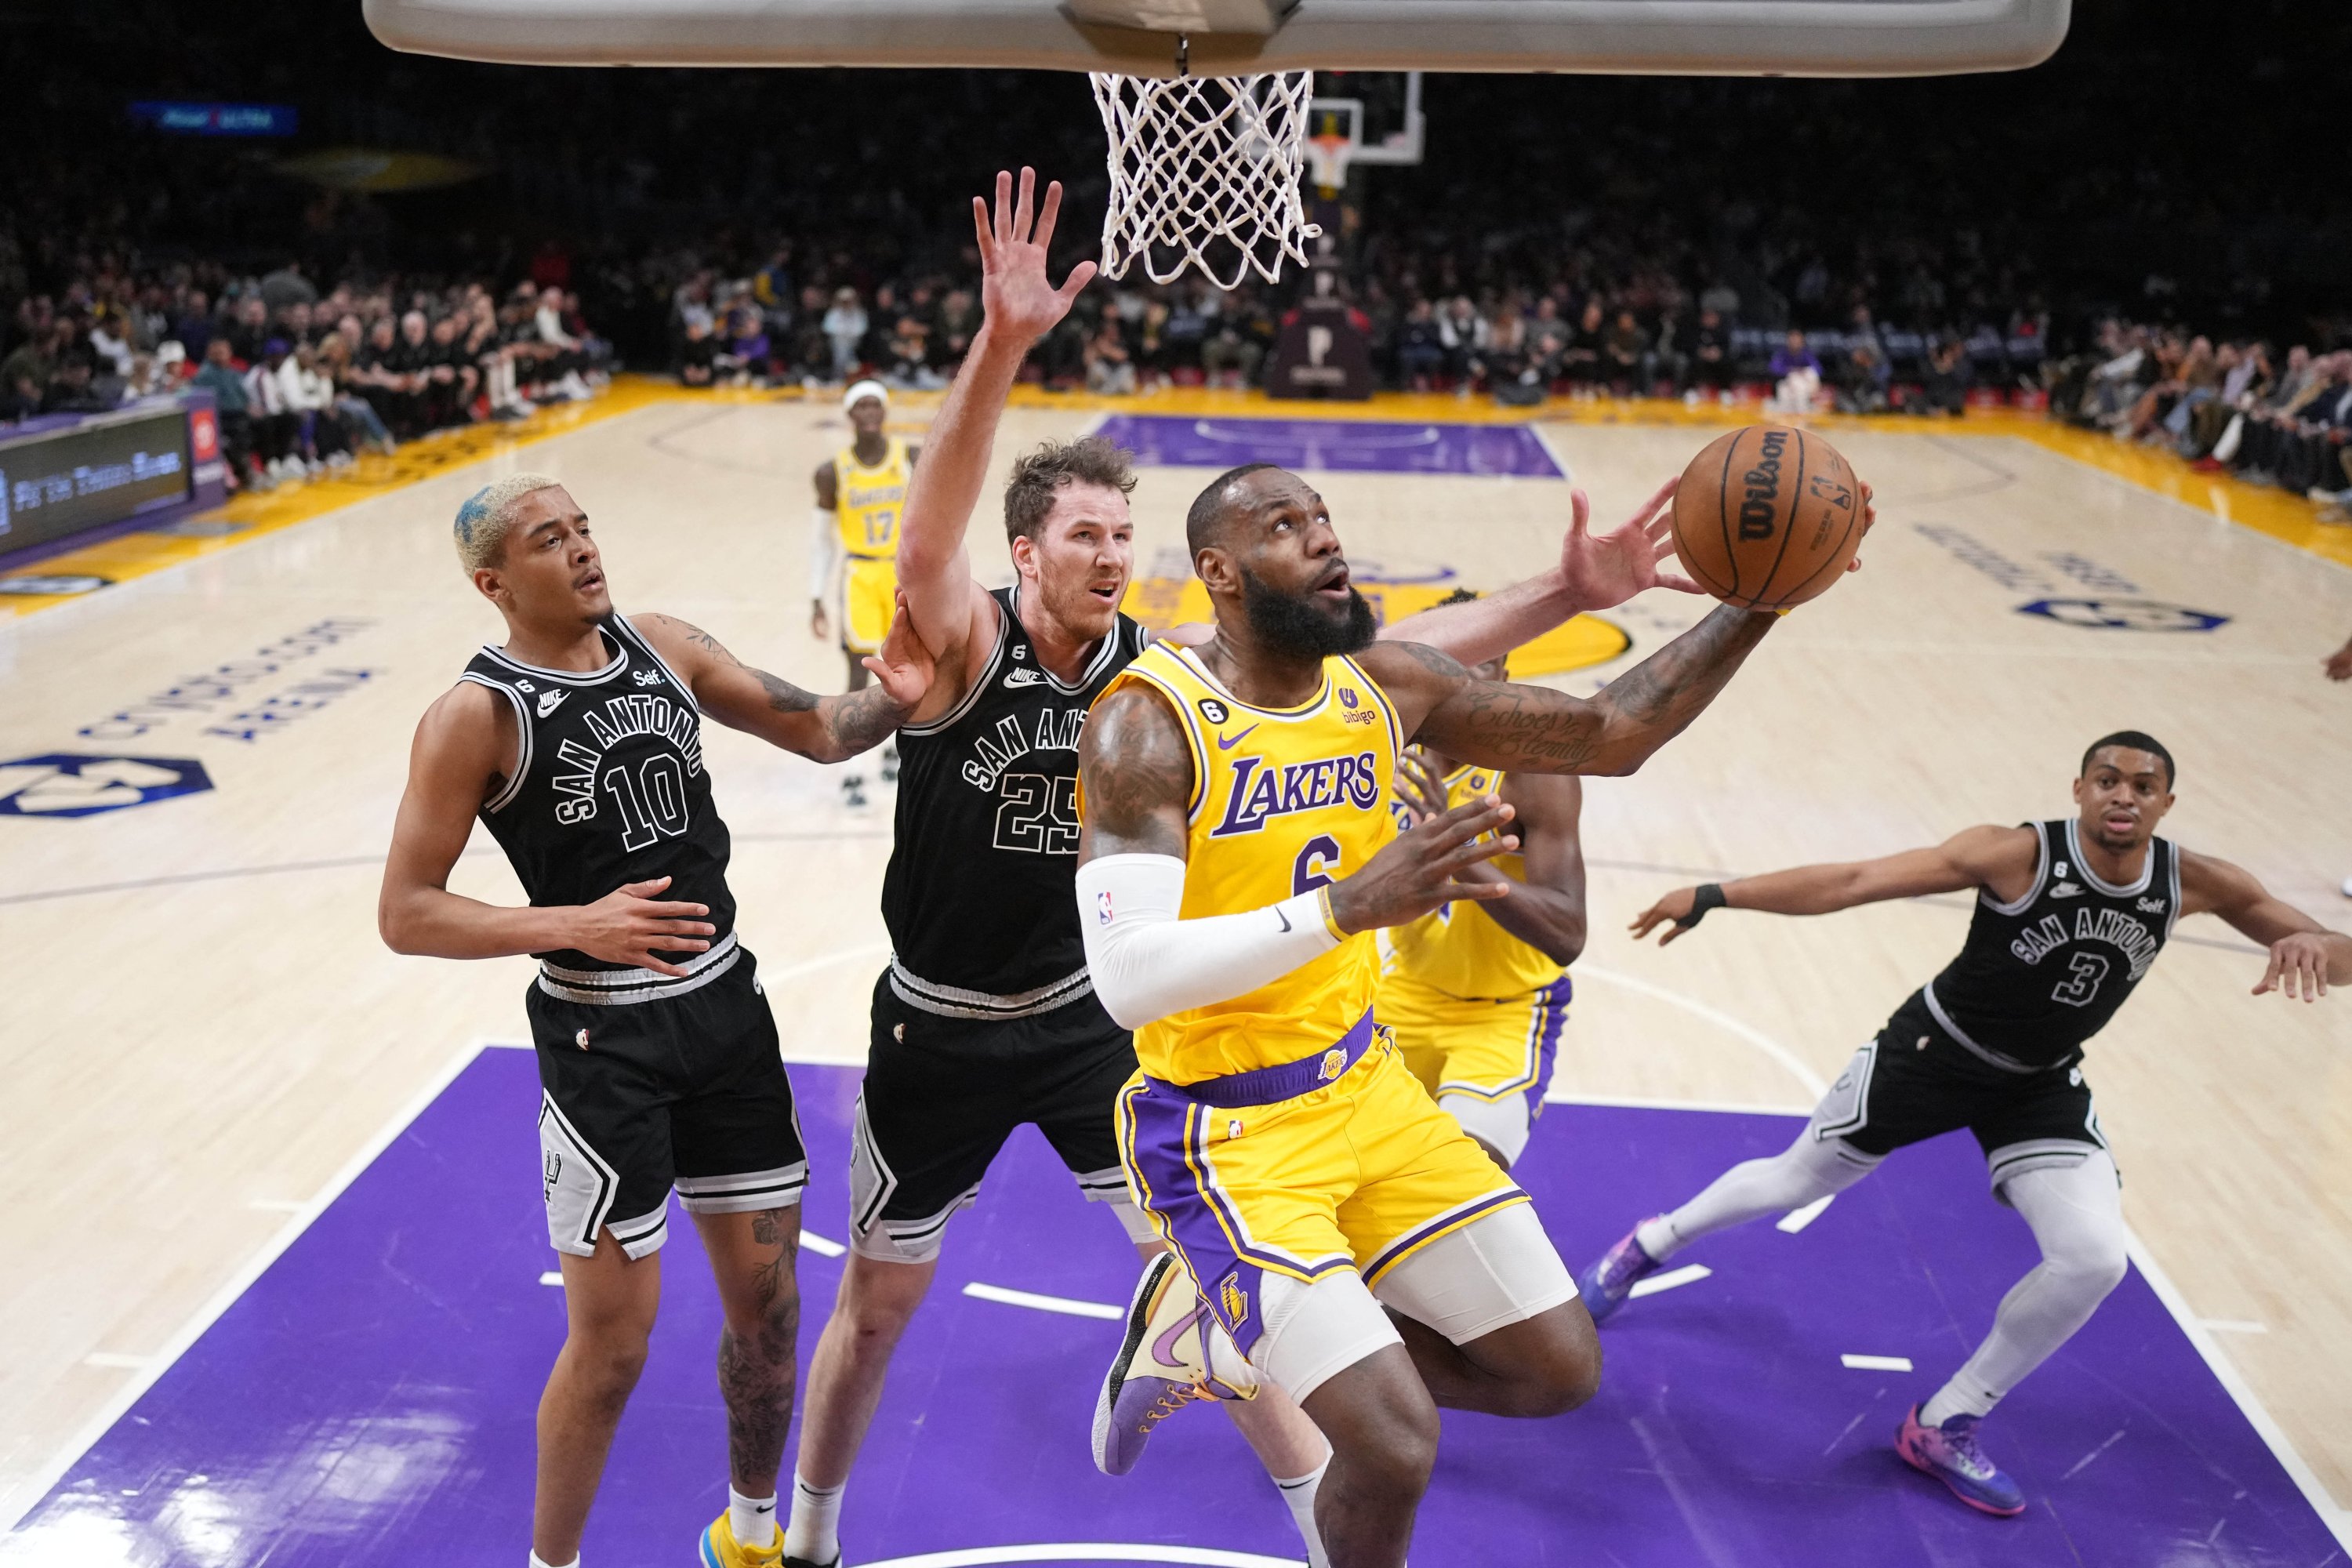 Penyerang Los Angeles Lakers LeBron James menembak ke arah penyerang San Antonio Spurs Jeremy Sochan dan center Jakob Poeltl pada babak pertama di Crypto.com Arena, Los Angeles, AS, 25 Jan 2023. (Foto Reuters)